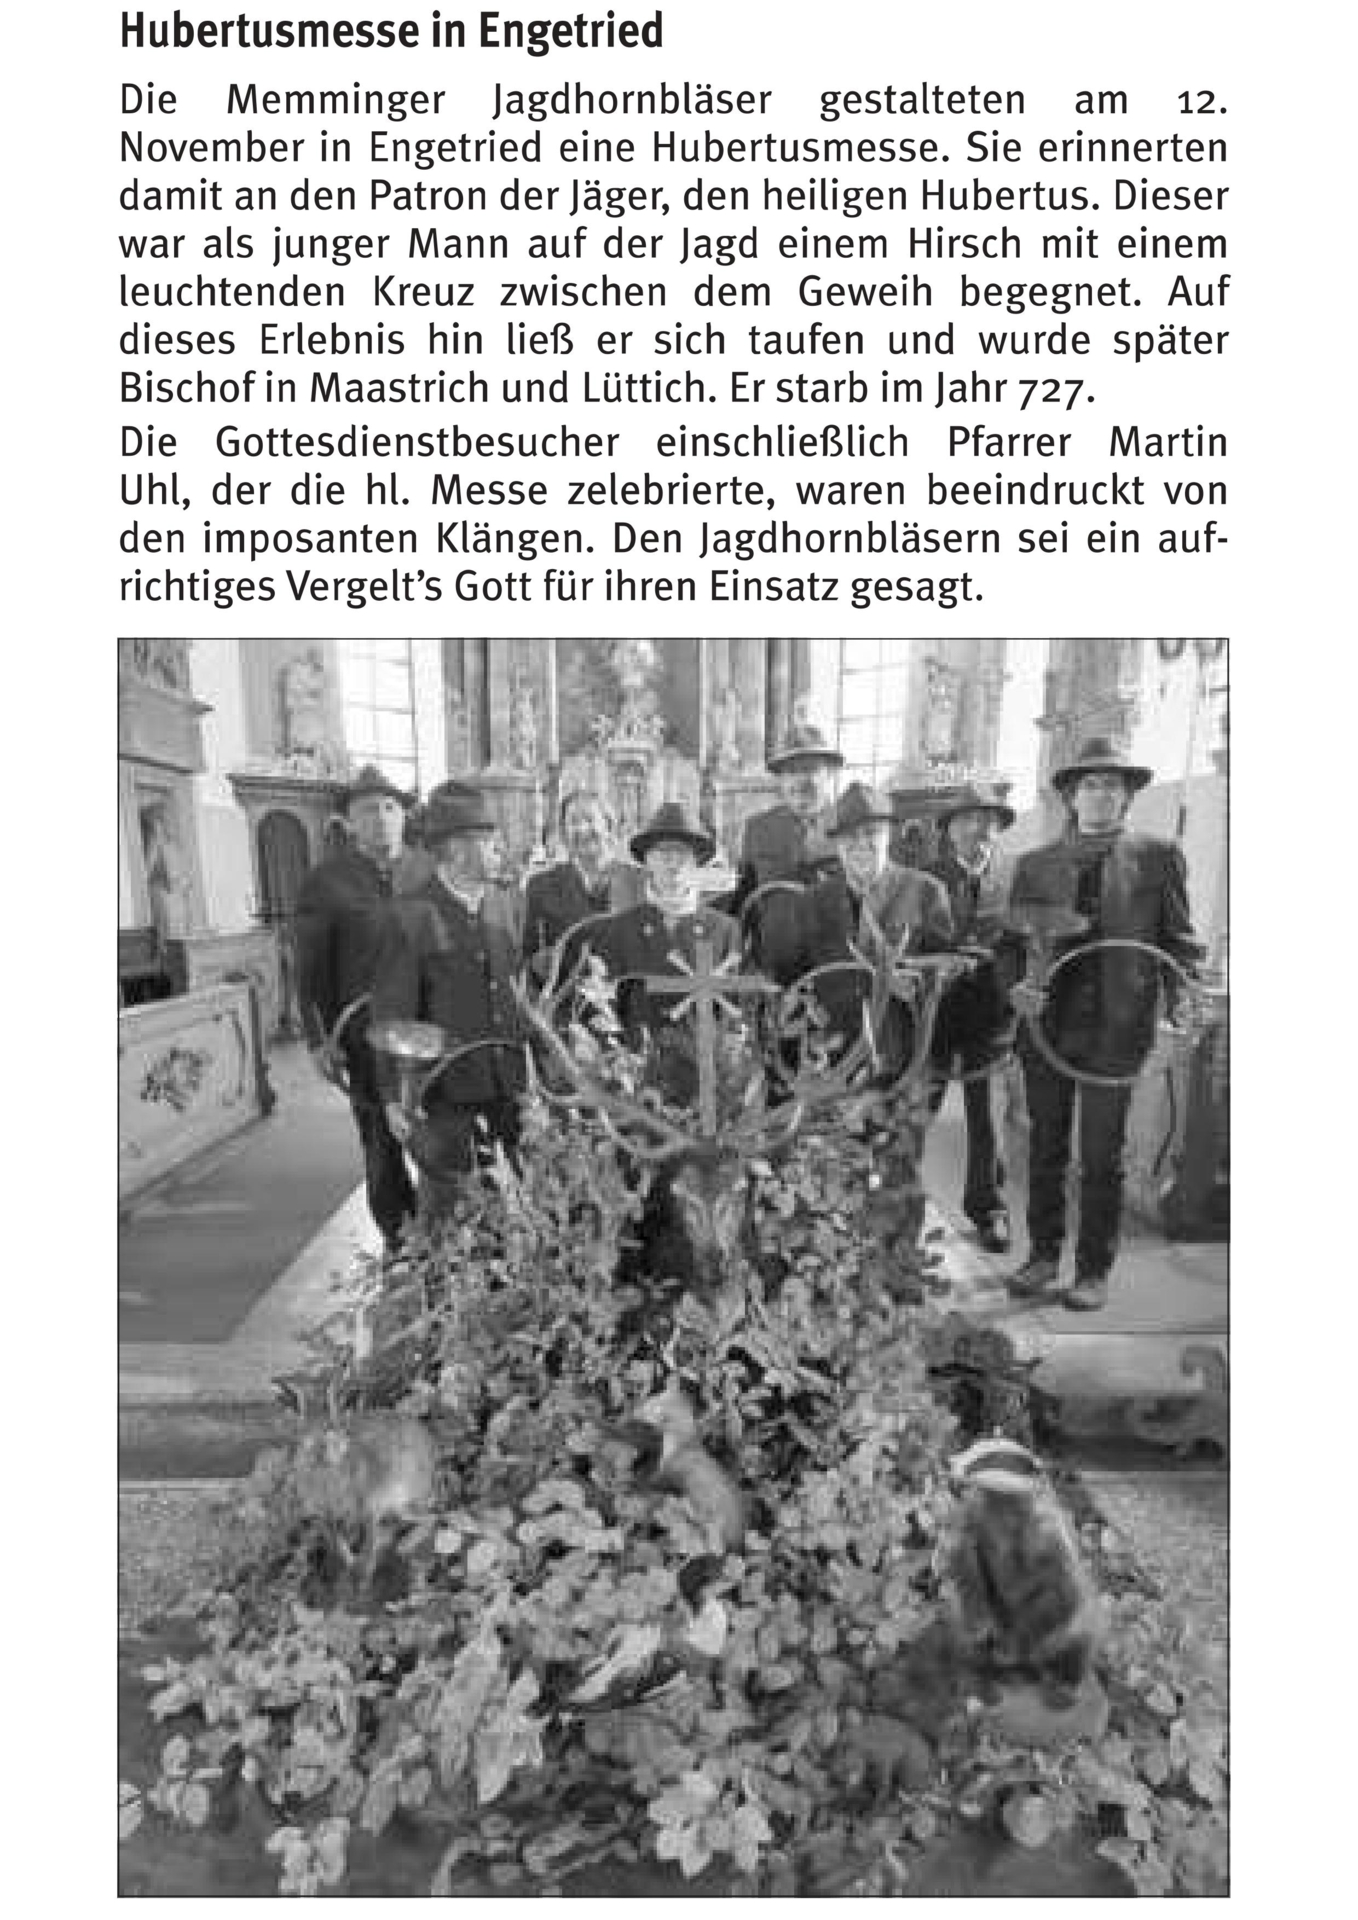 Auszug aus dem Gemeindeblatt Markt Rettenbach